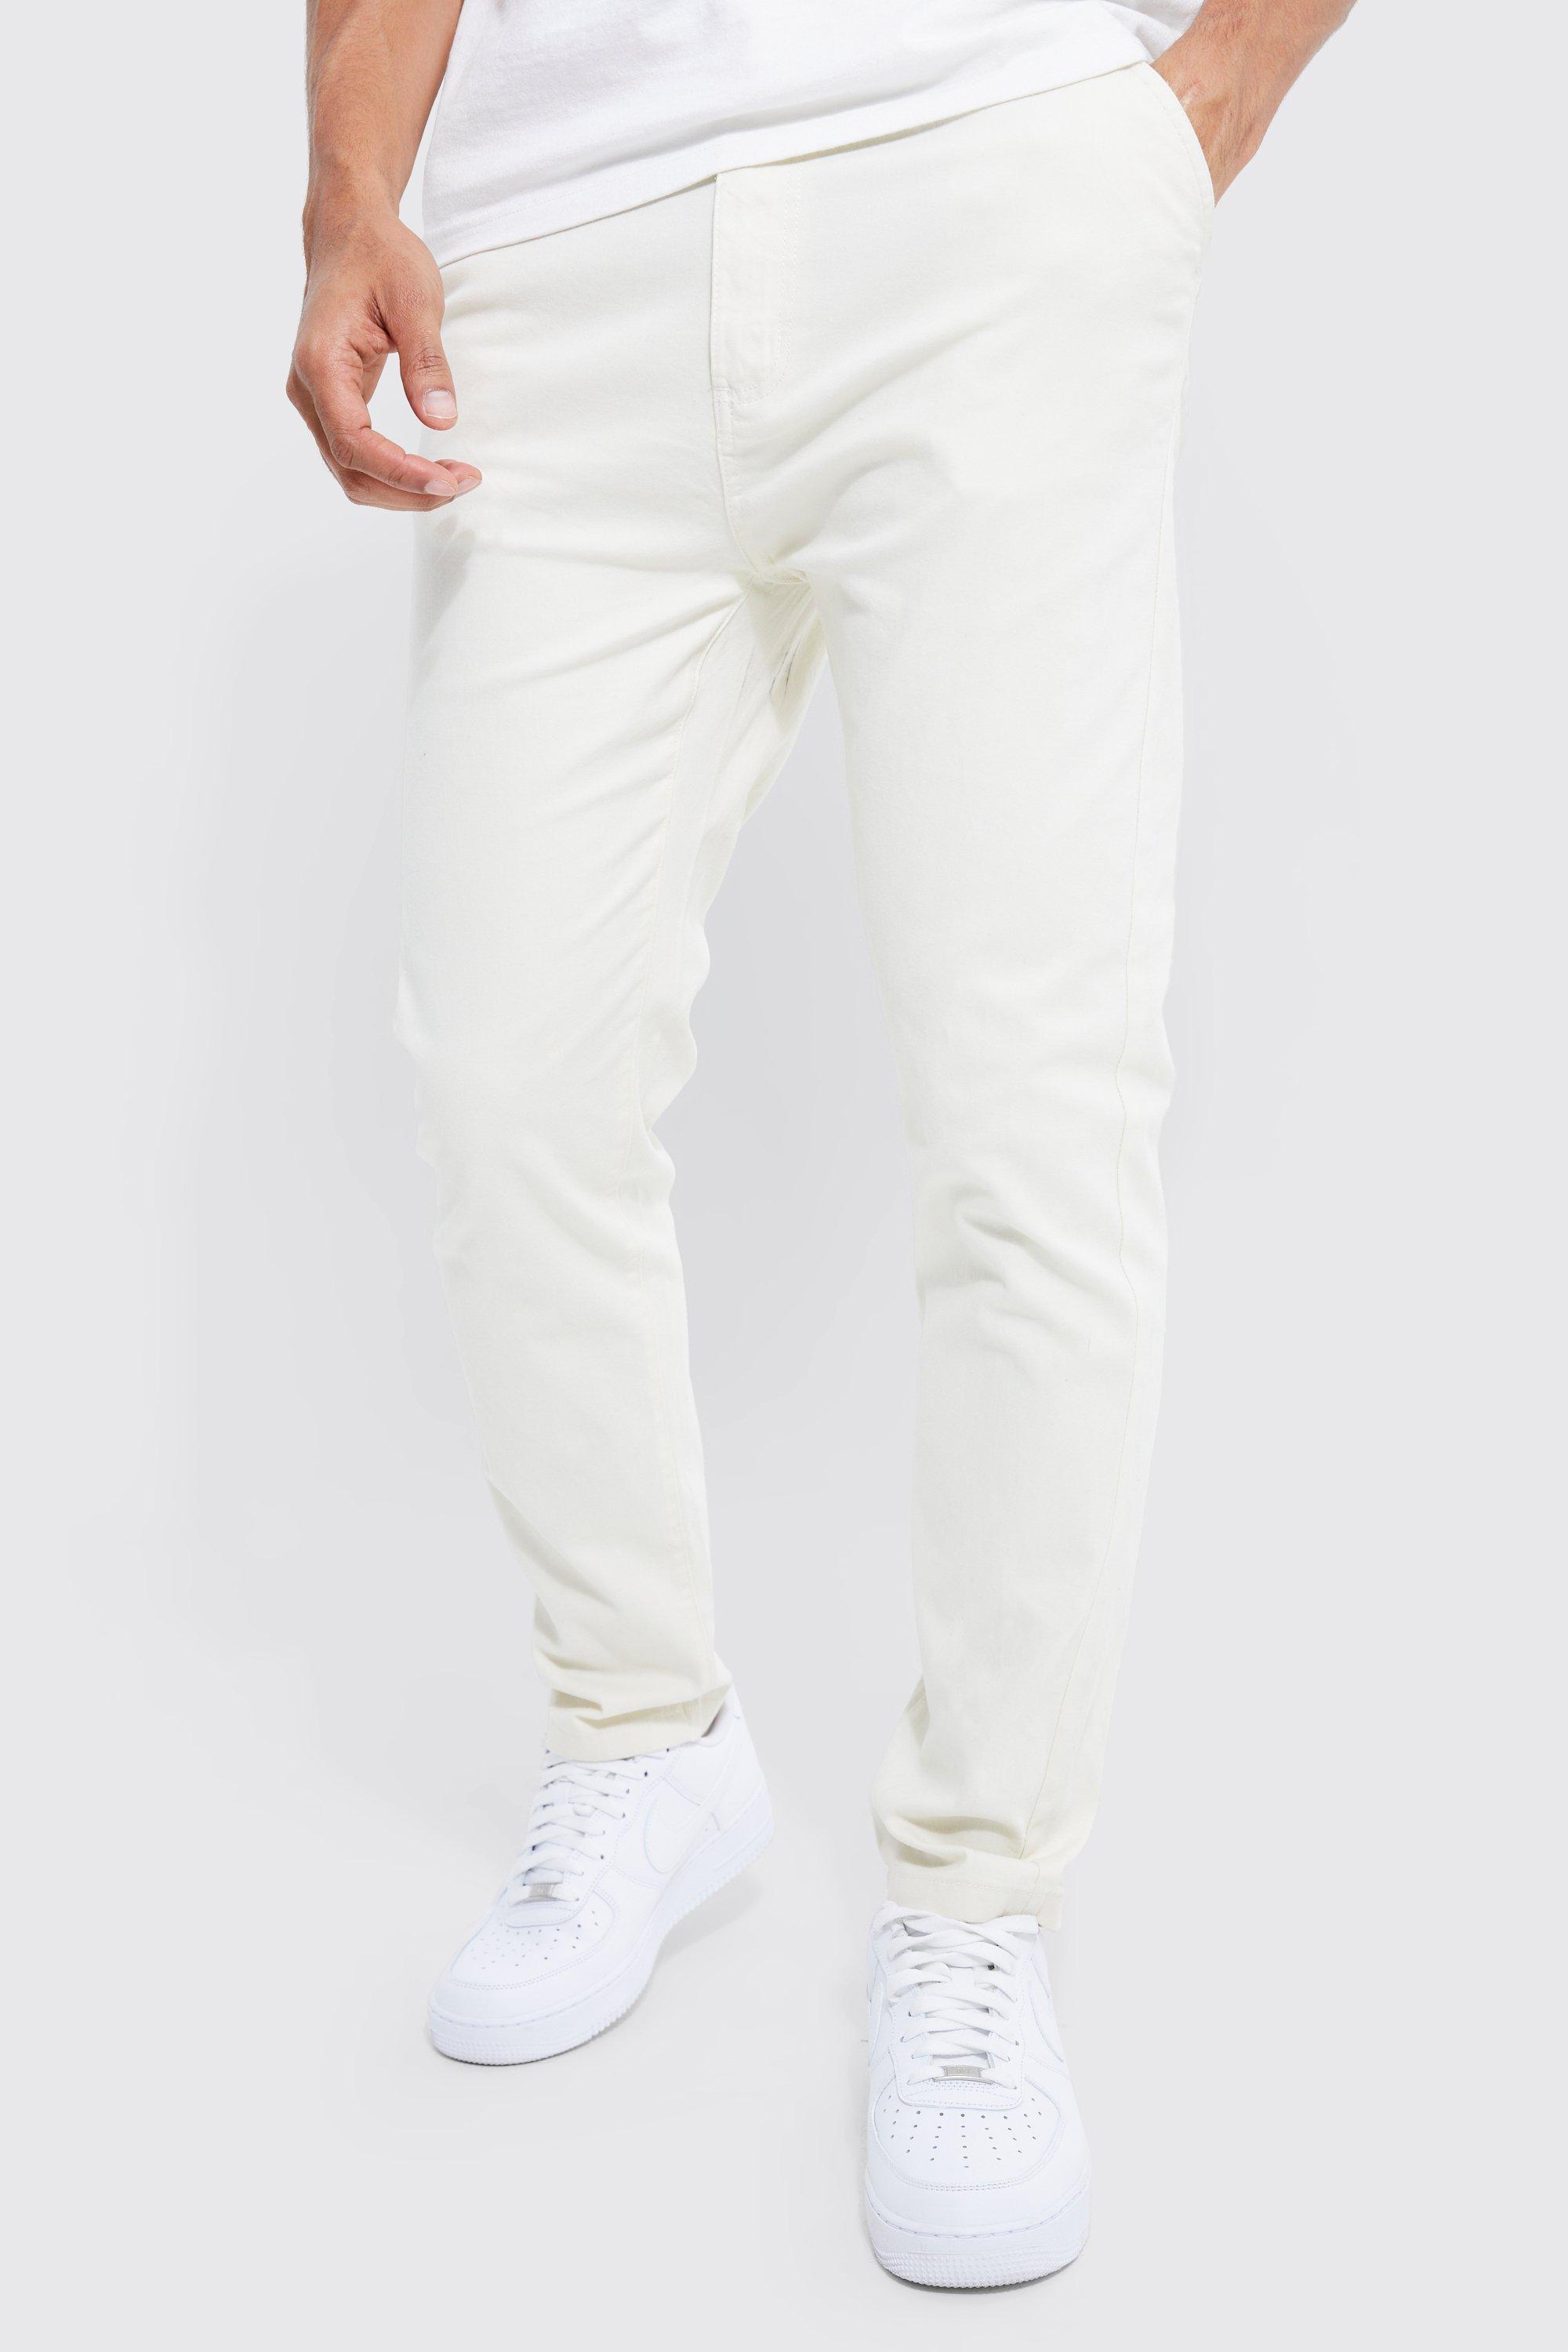 pantalon chino slim stretch homme - ecru - 32, ecru